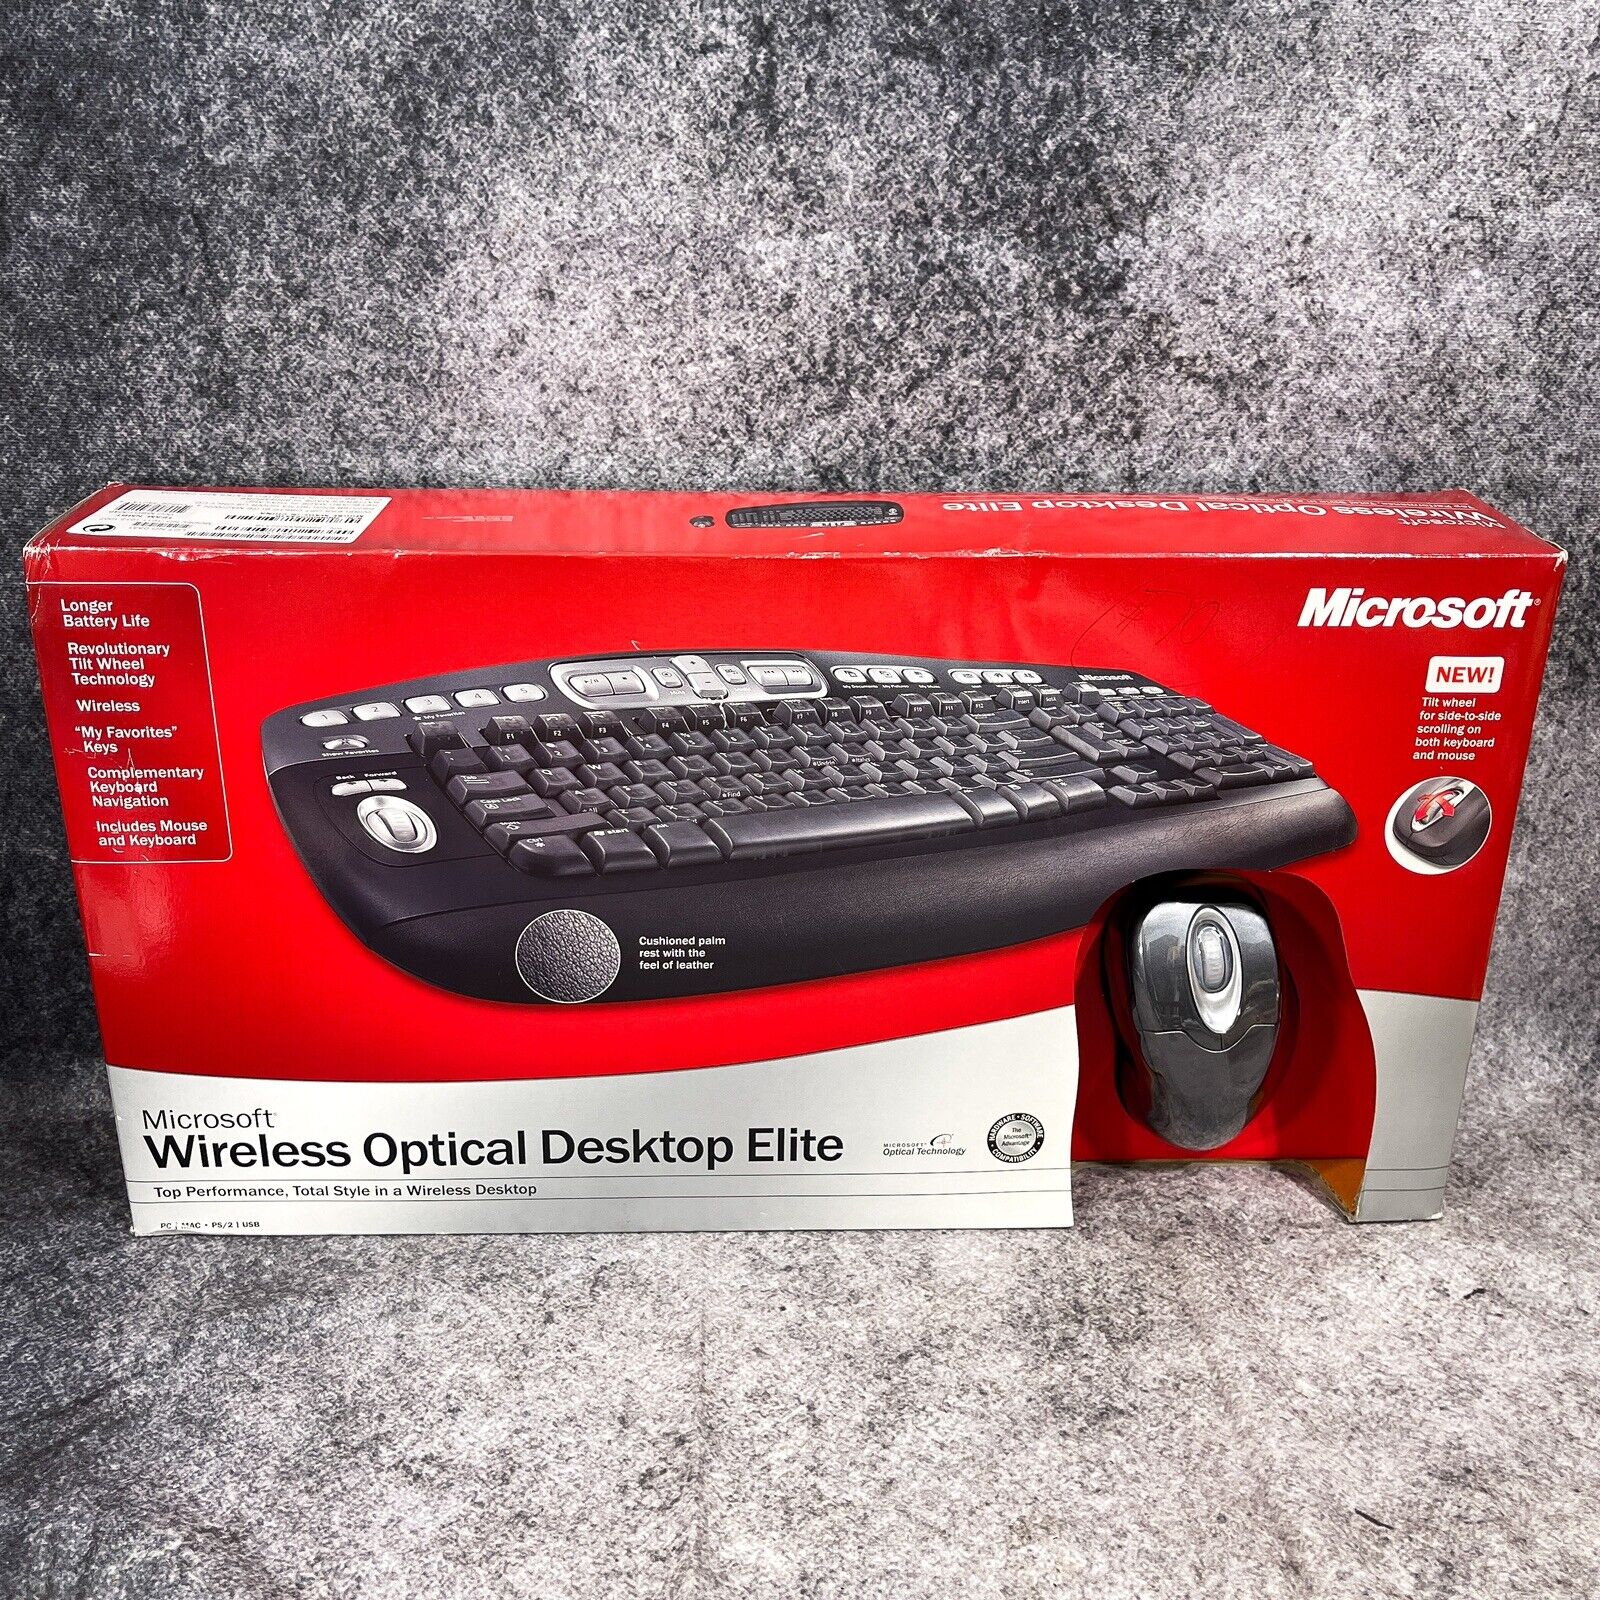 Microsoft Wireless Optical Desktop Elite Model 1011 S51-00001 Keyboard & Mouse